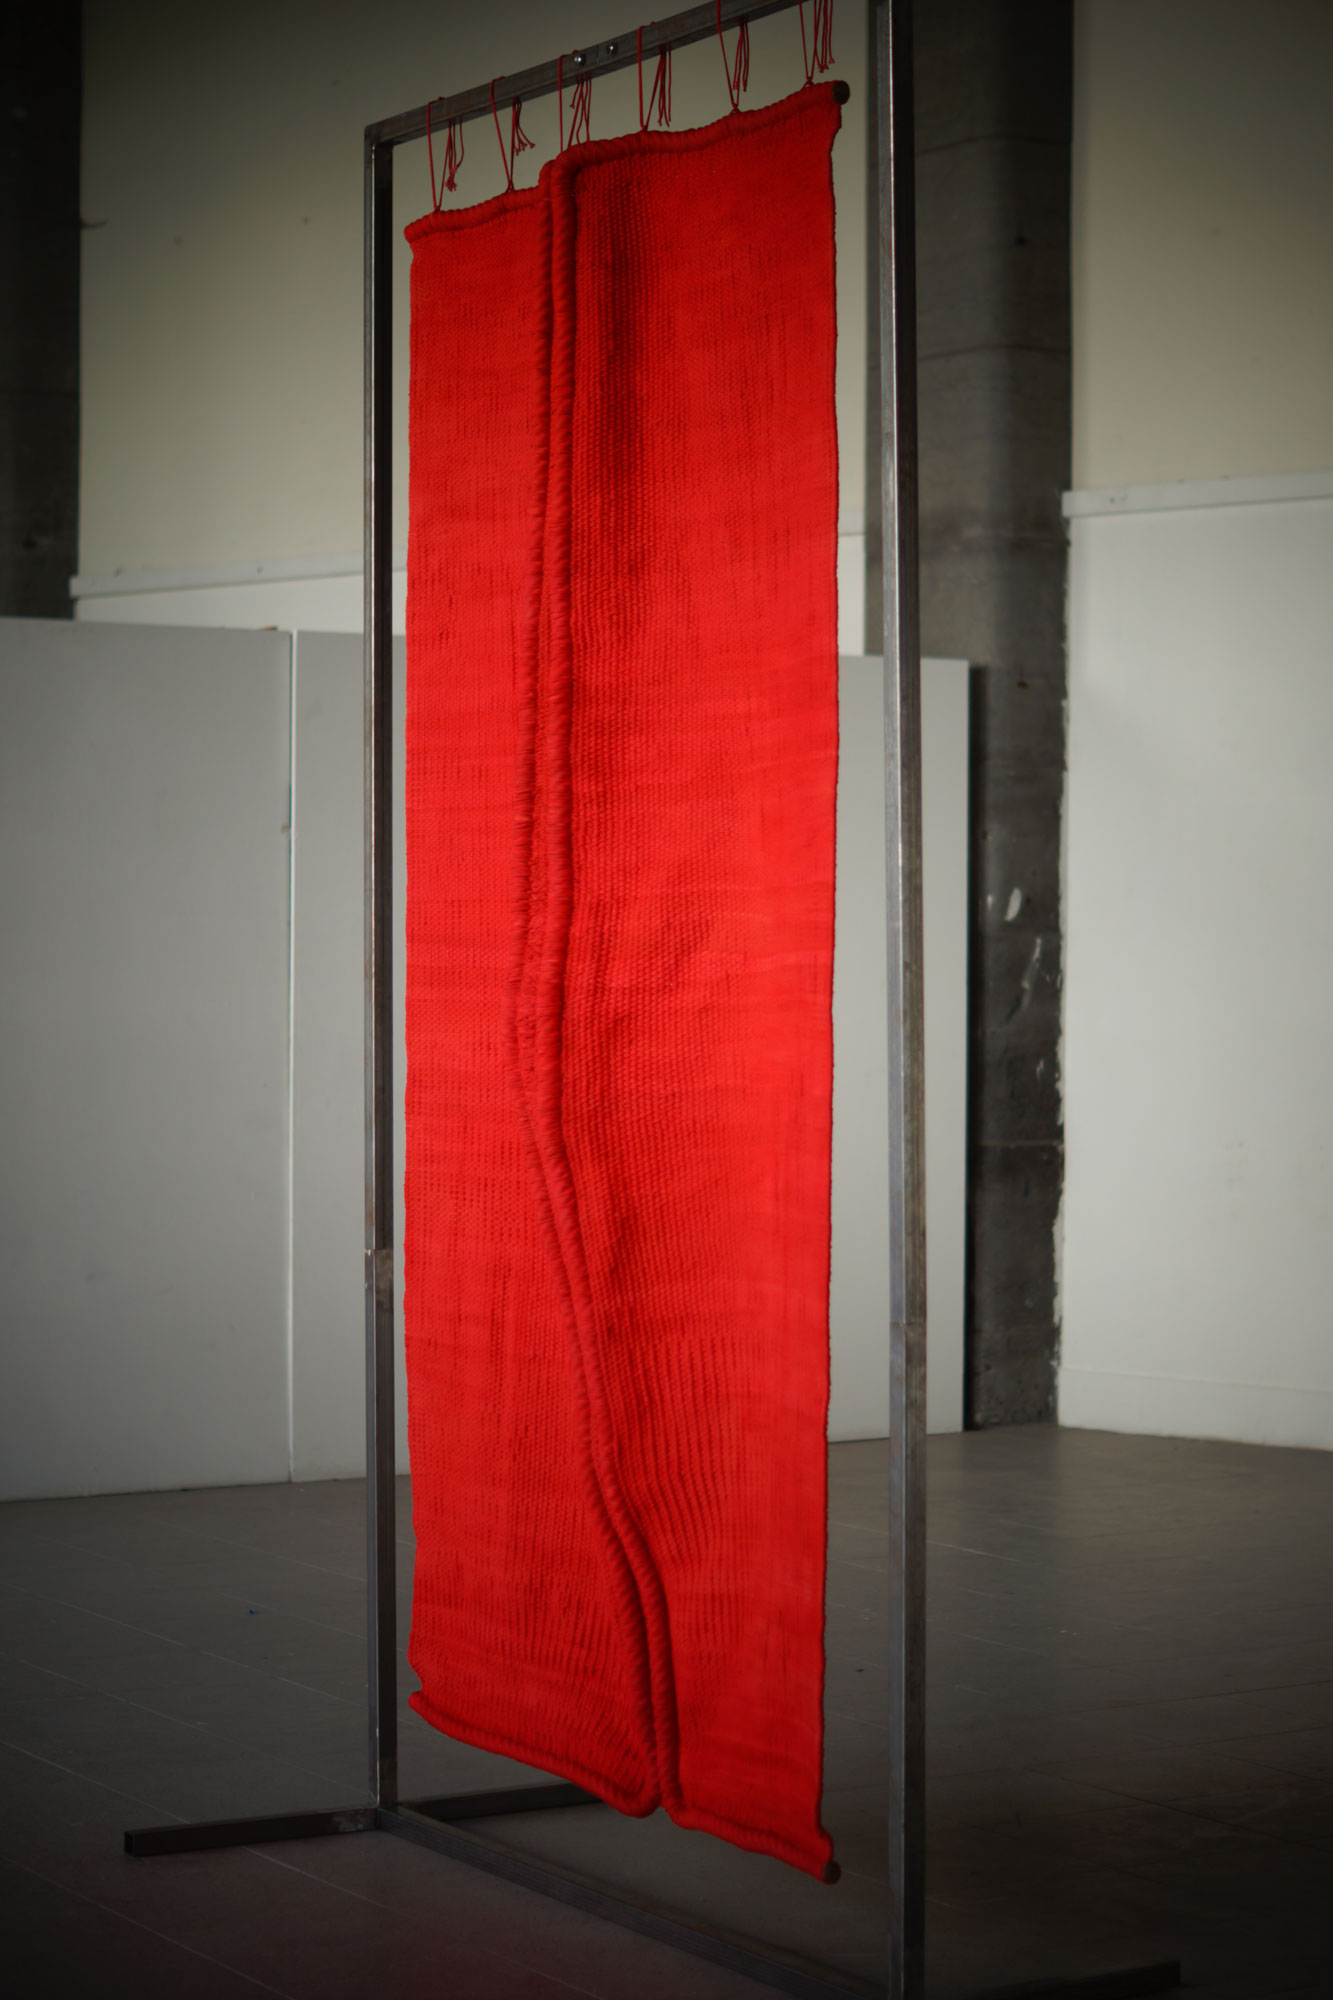 Rouge - Tapisserie haute lisse - Coton teint, cirage, acier - 305 x 170 x 30 cm - 2019 - Photo : M. Grassart